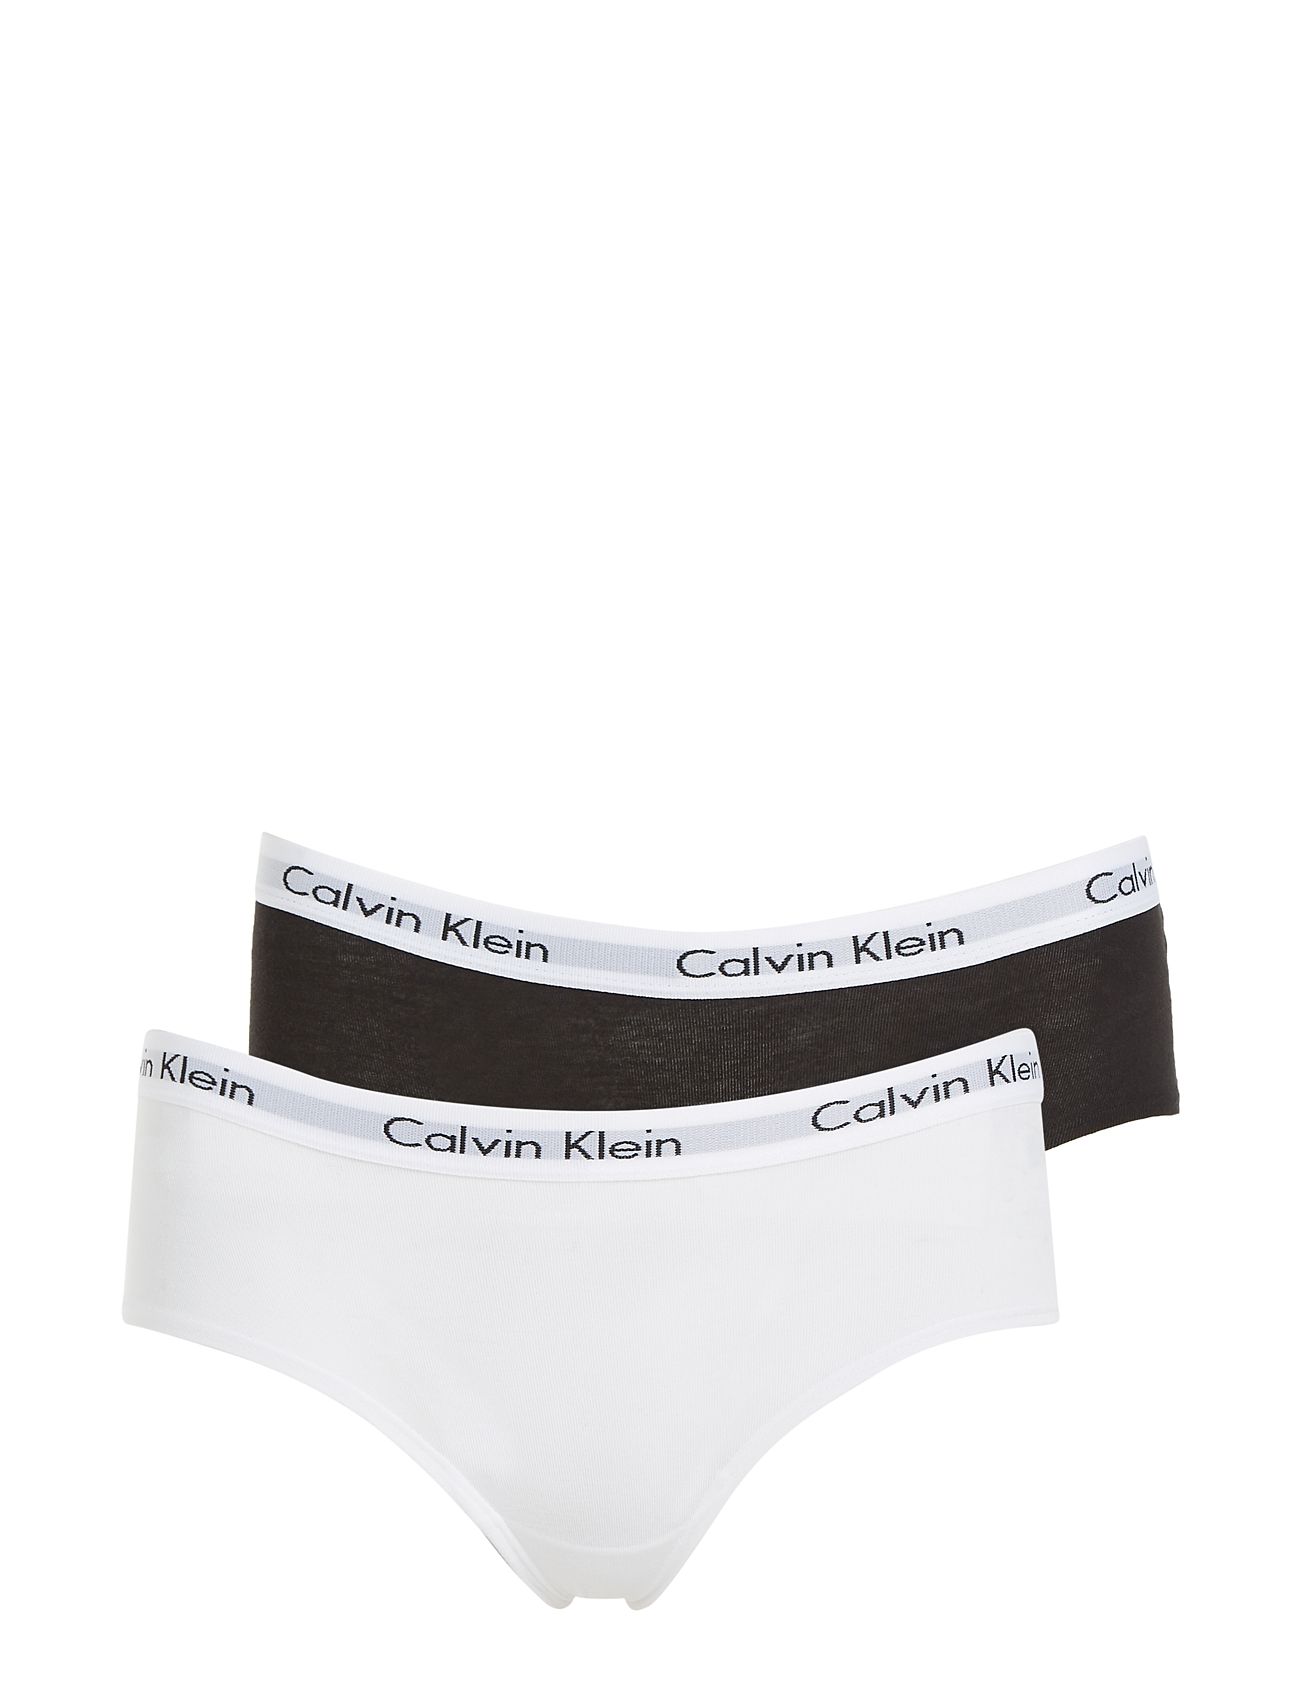 Hound Stædig afgår Hvid Calvin Klein 2pk Shorty underbukser for børn - Pashion.dk